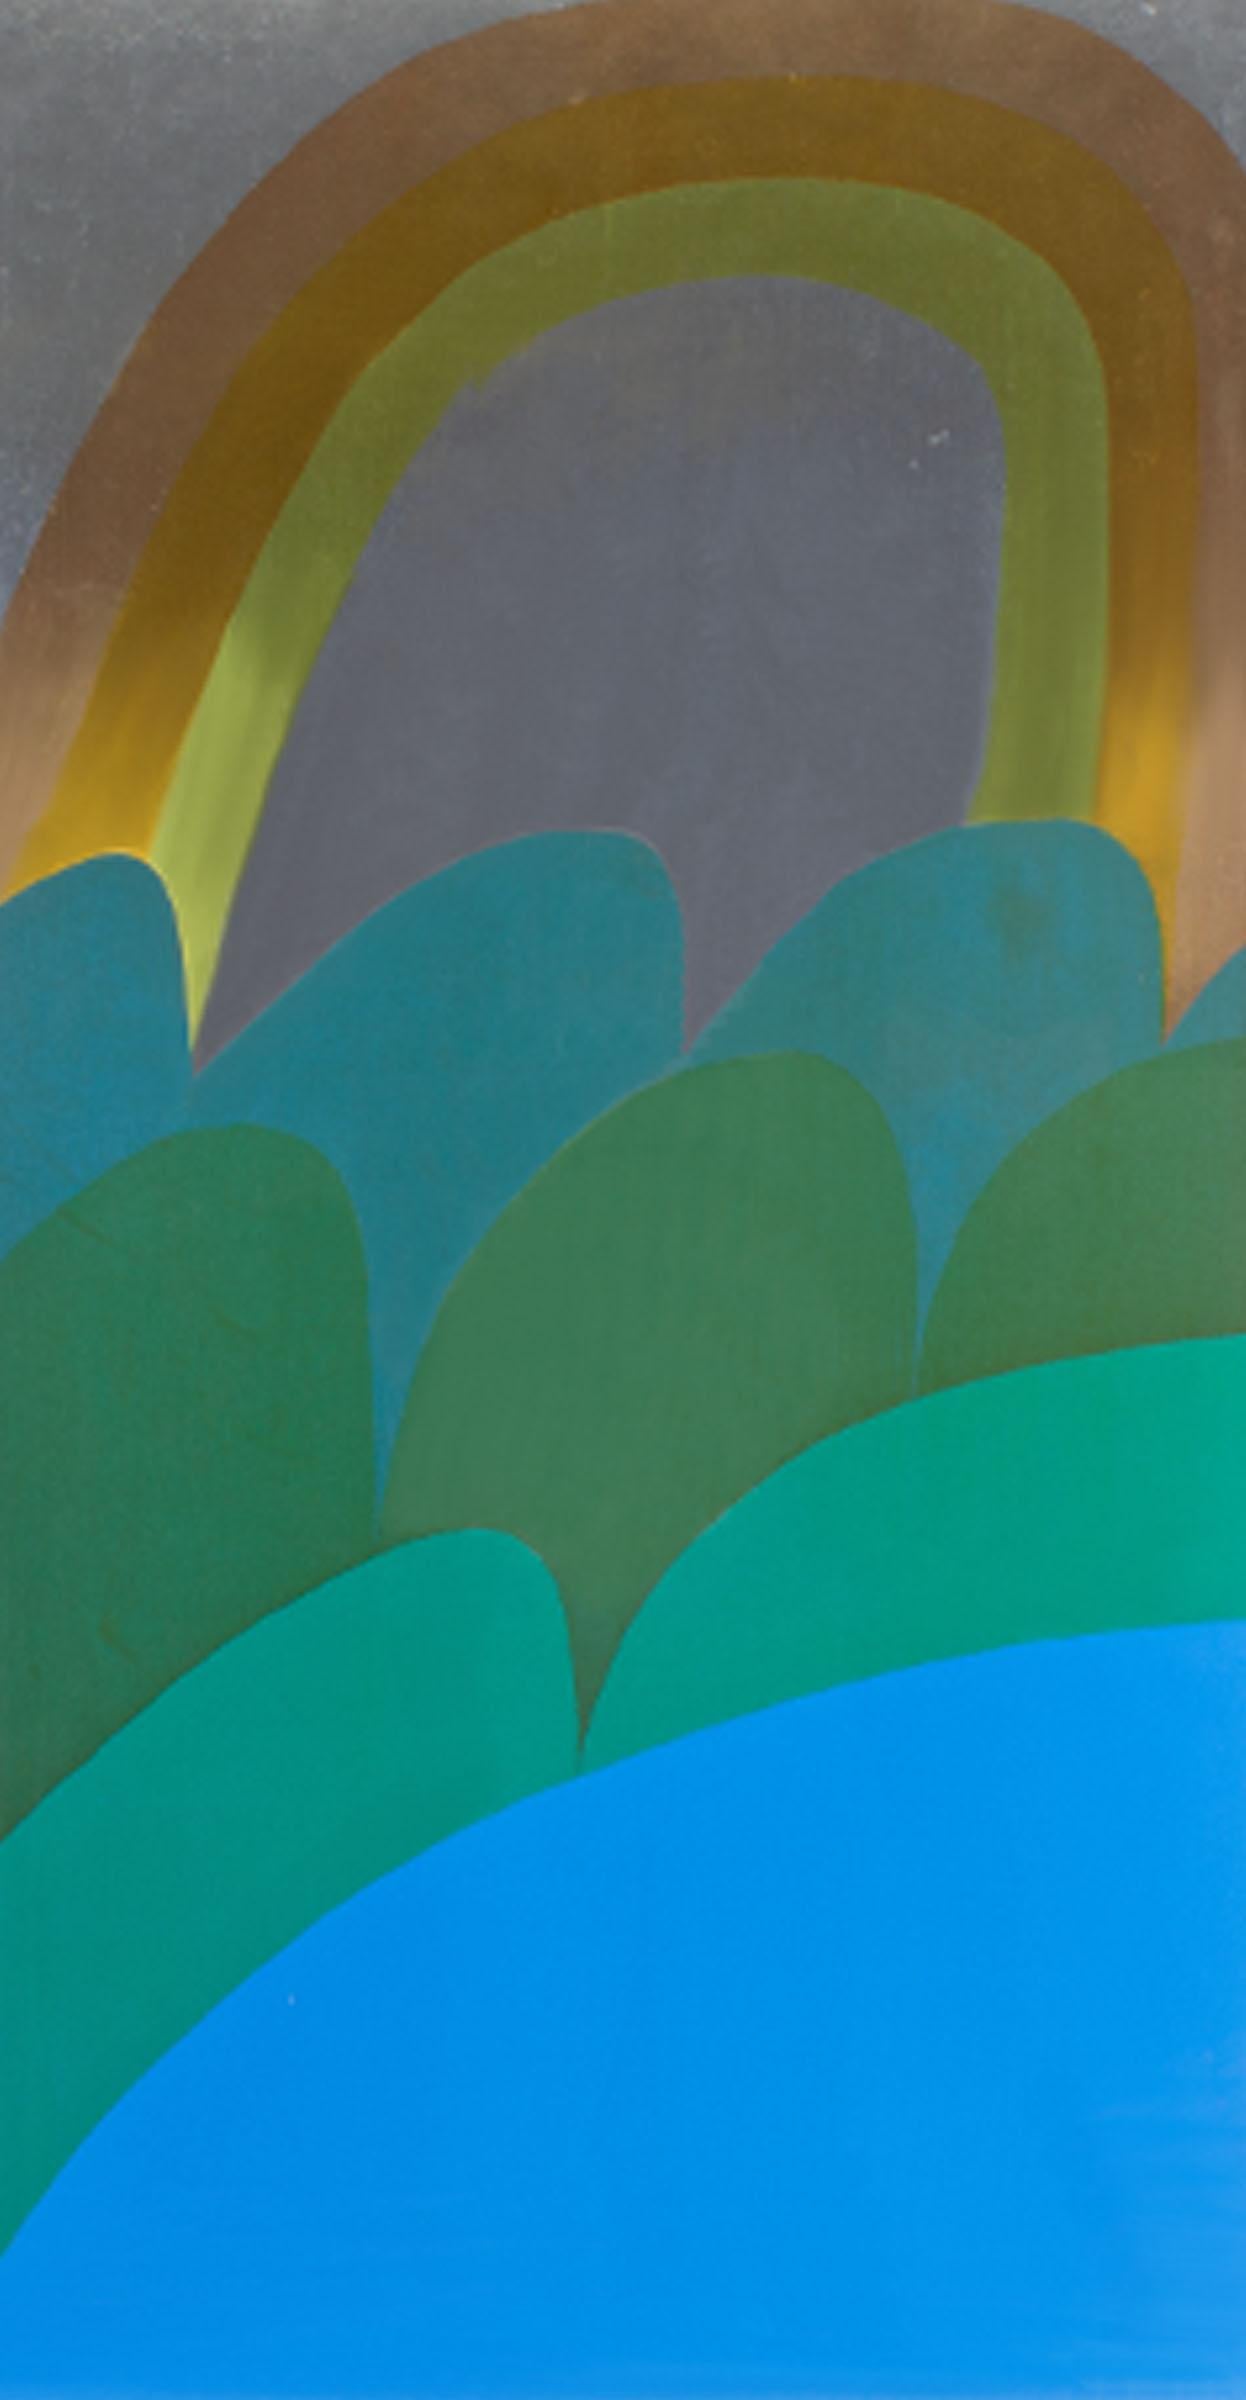 Eine limitierte Auflage einer Serigrafie auf Metallfolie mit dem Titel Coast Range von der amerikanischen Grafikerin Carol Summers (1925-2016). Der Metallic-Serigraphie-Druck zeigt einen roten und gelben Regenbogen über blauen und grünen Wellen, die